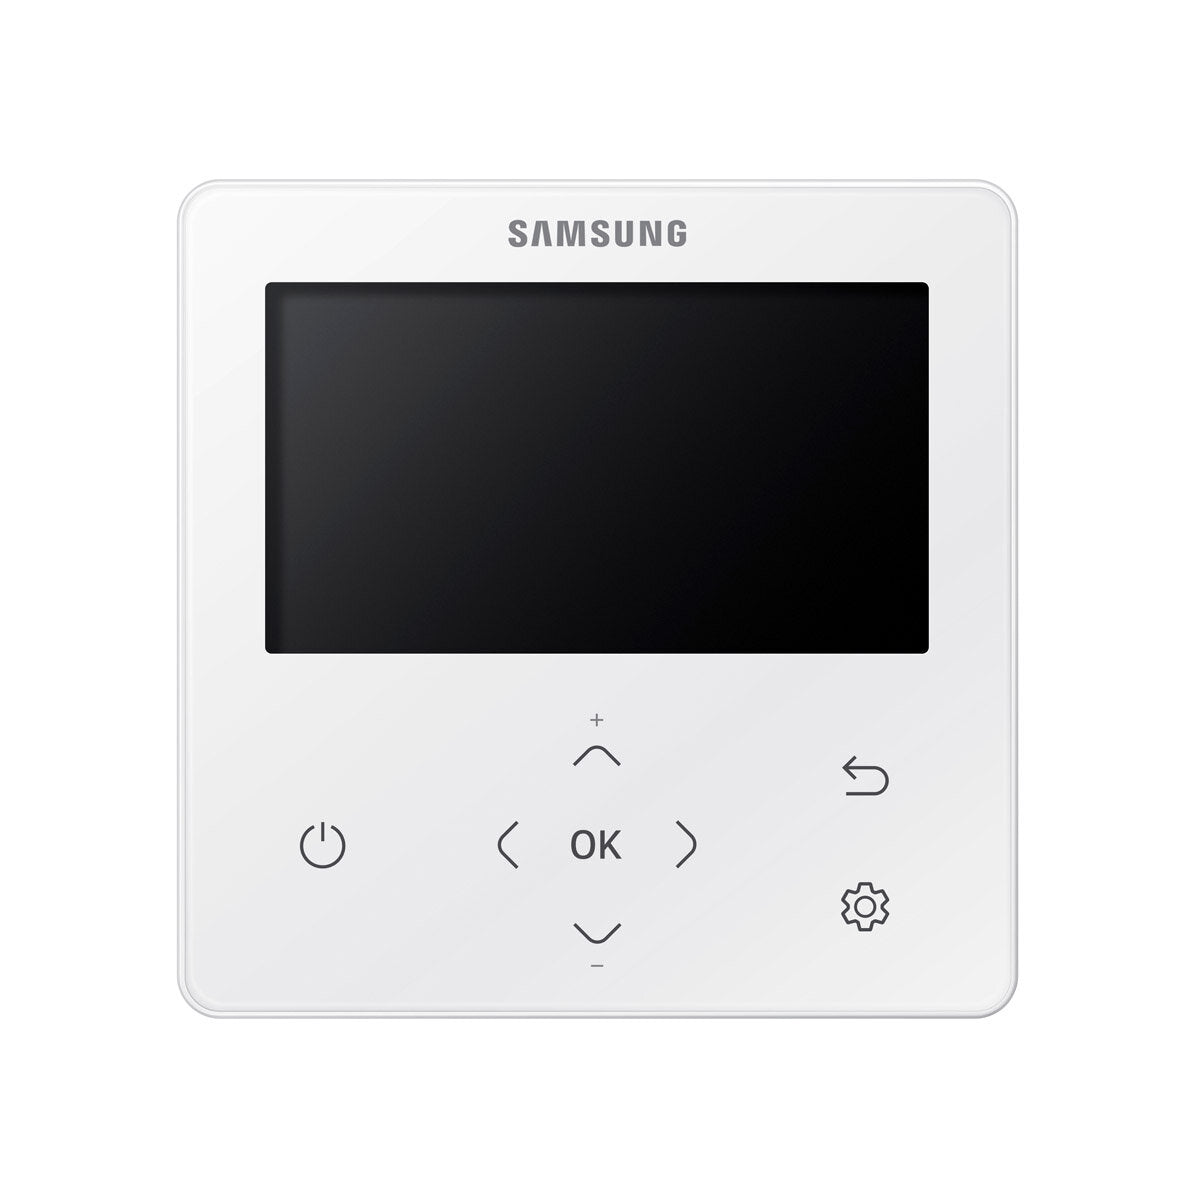 Samsung Climatiseur Cassette WindFree 1 Way penta split 9000 + 9000 + 12000 + 12000 + 12000 BTU inverter A++ unité extérieure 10.0 kW